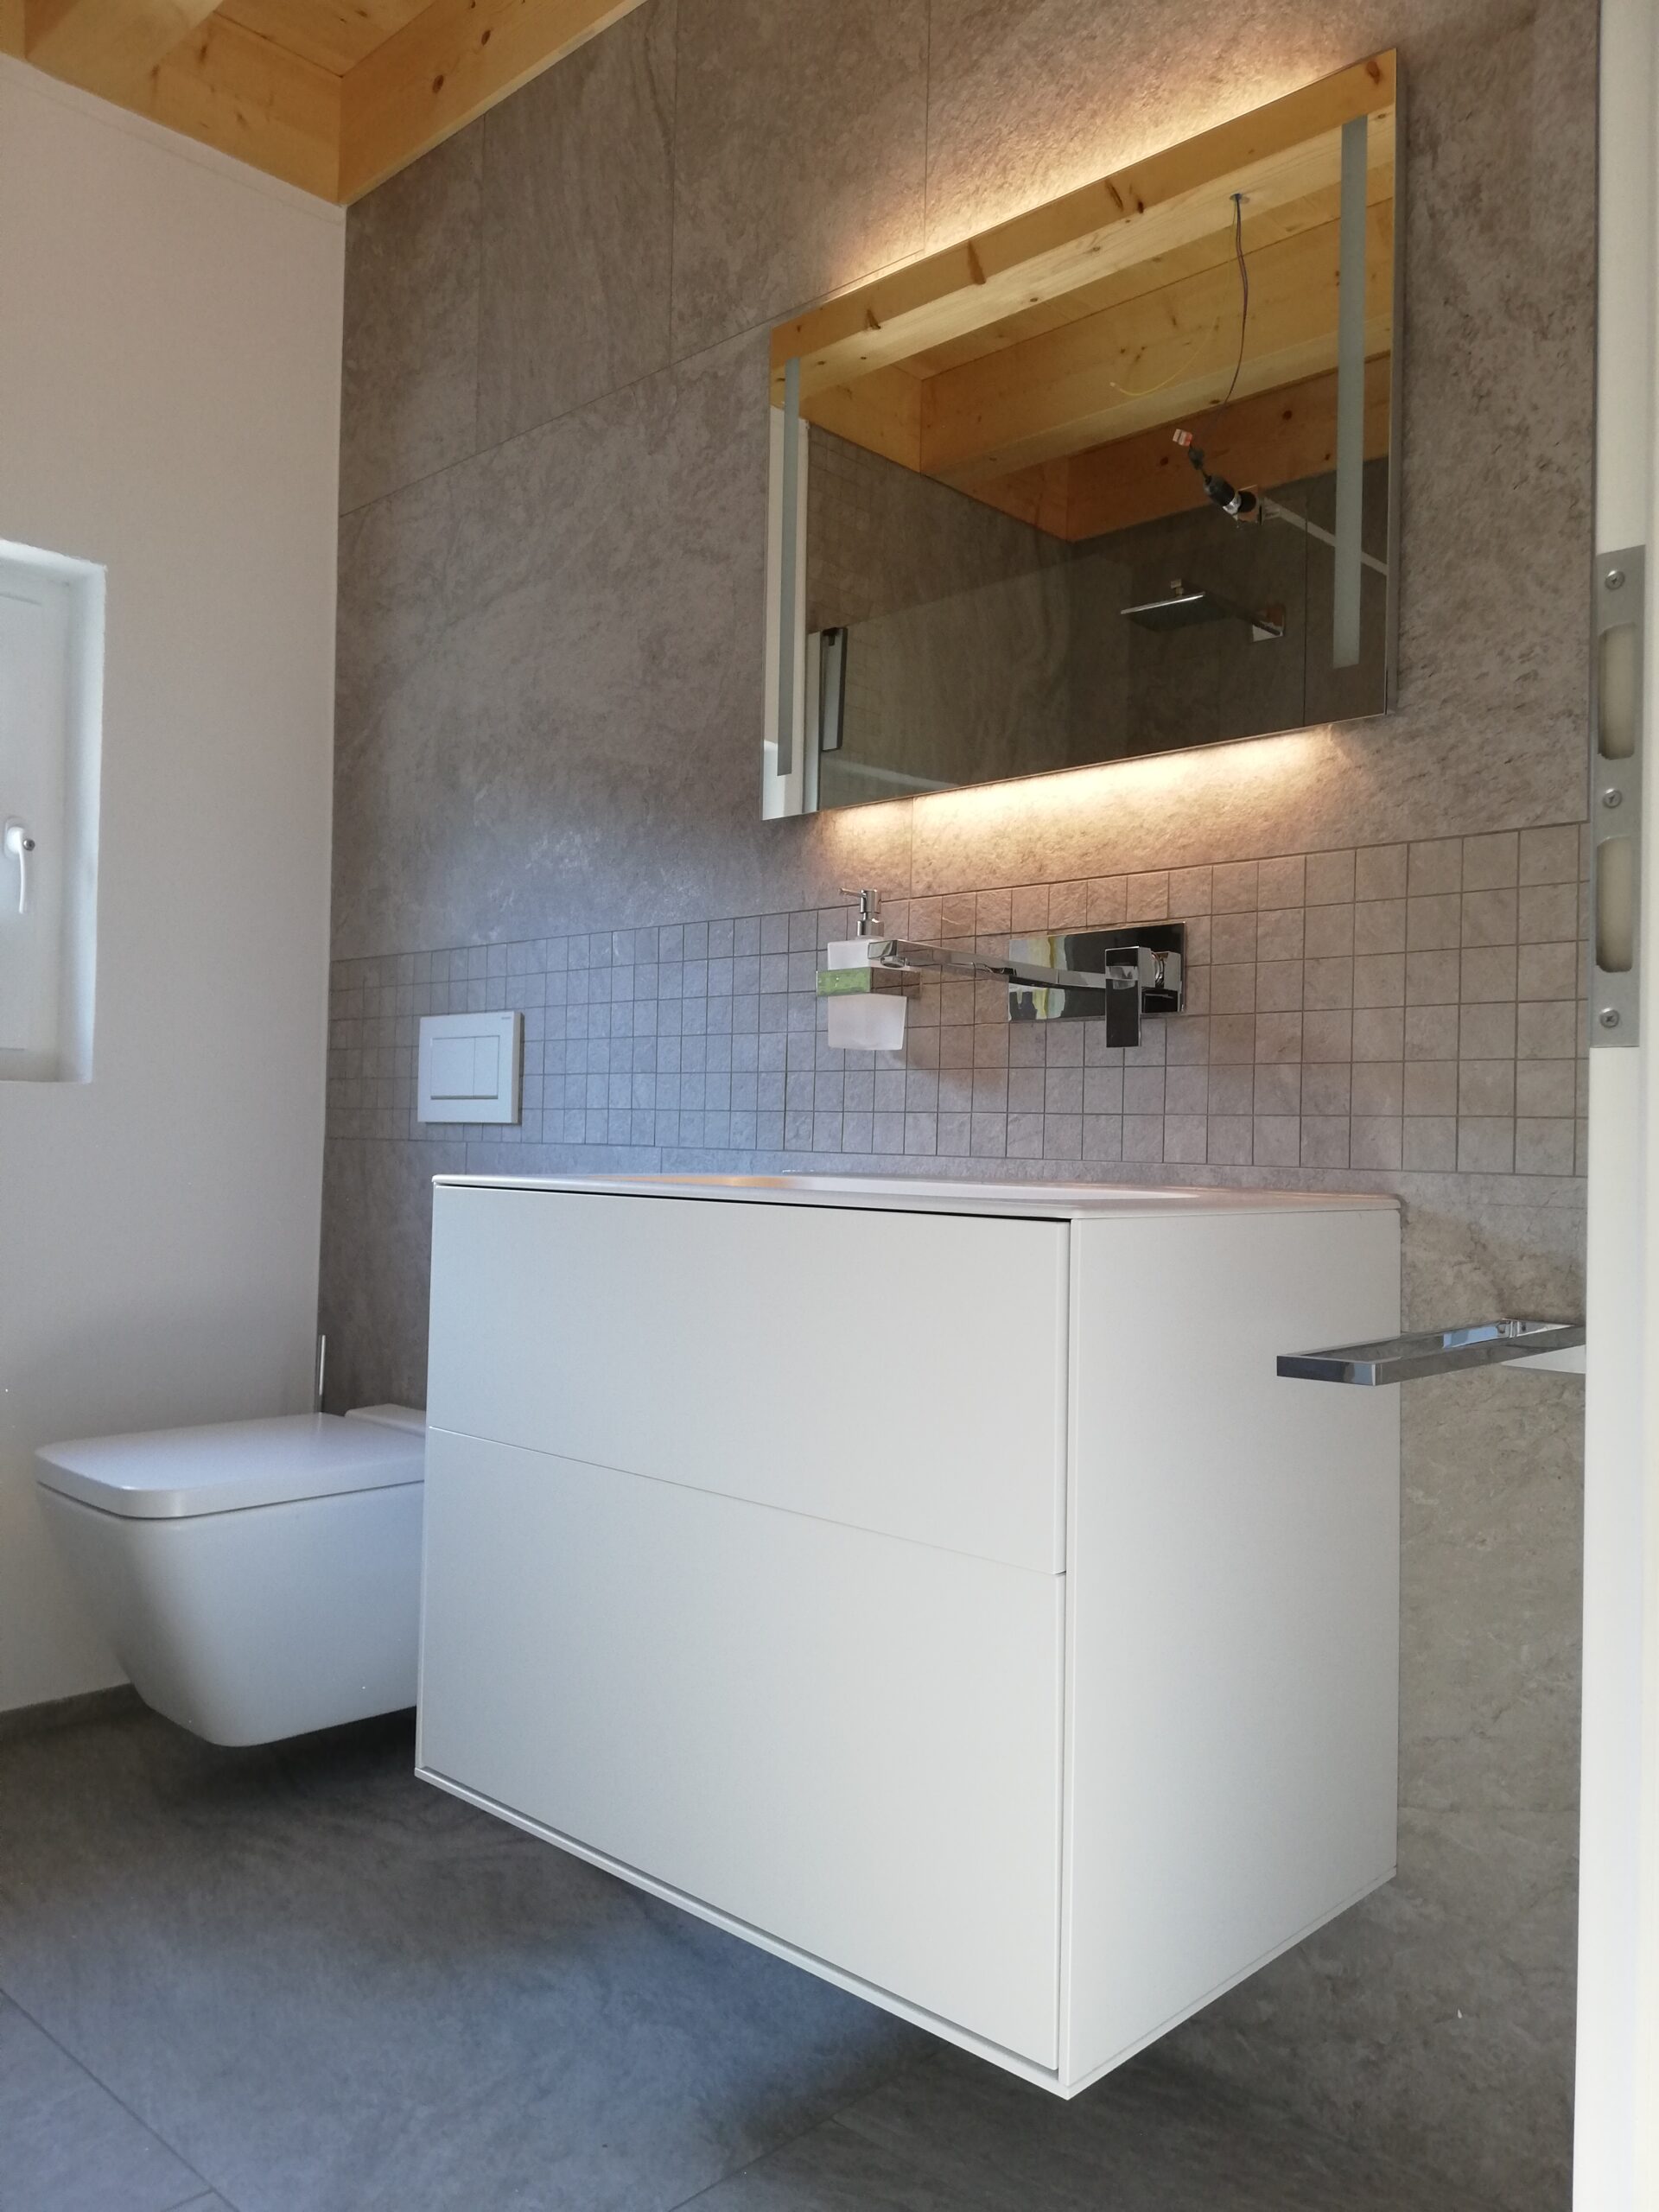 Bild von WC in Neubau EFH, Fliesen 5x5 cm, Mosaik, 45x90 cm, 150x75 cm, Stone-Optik